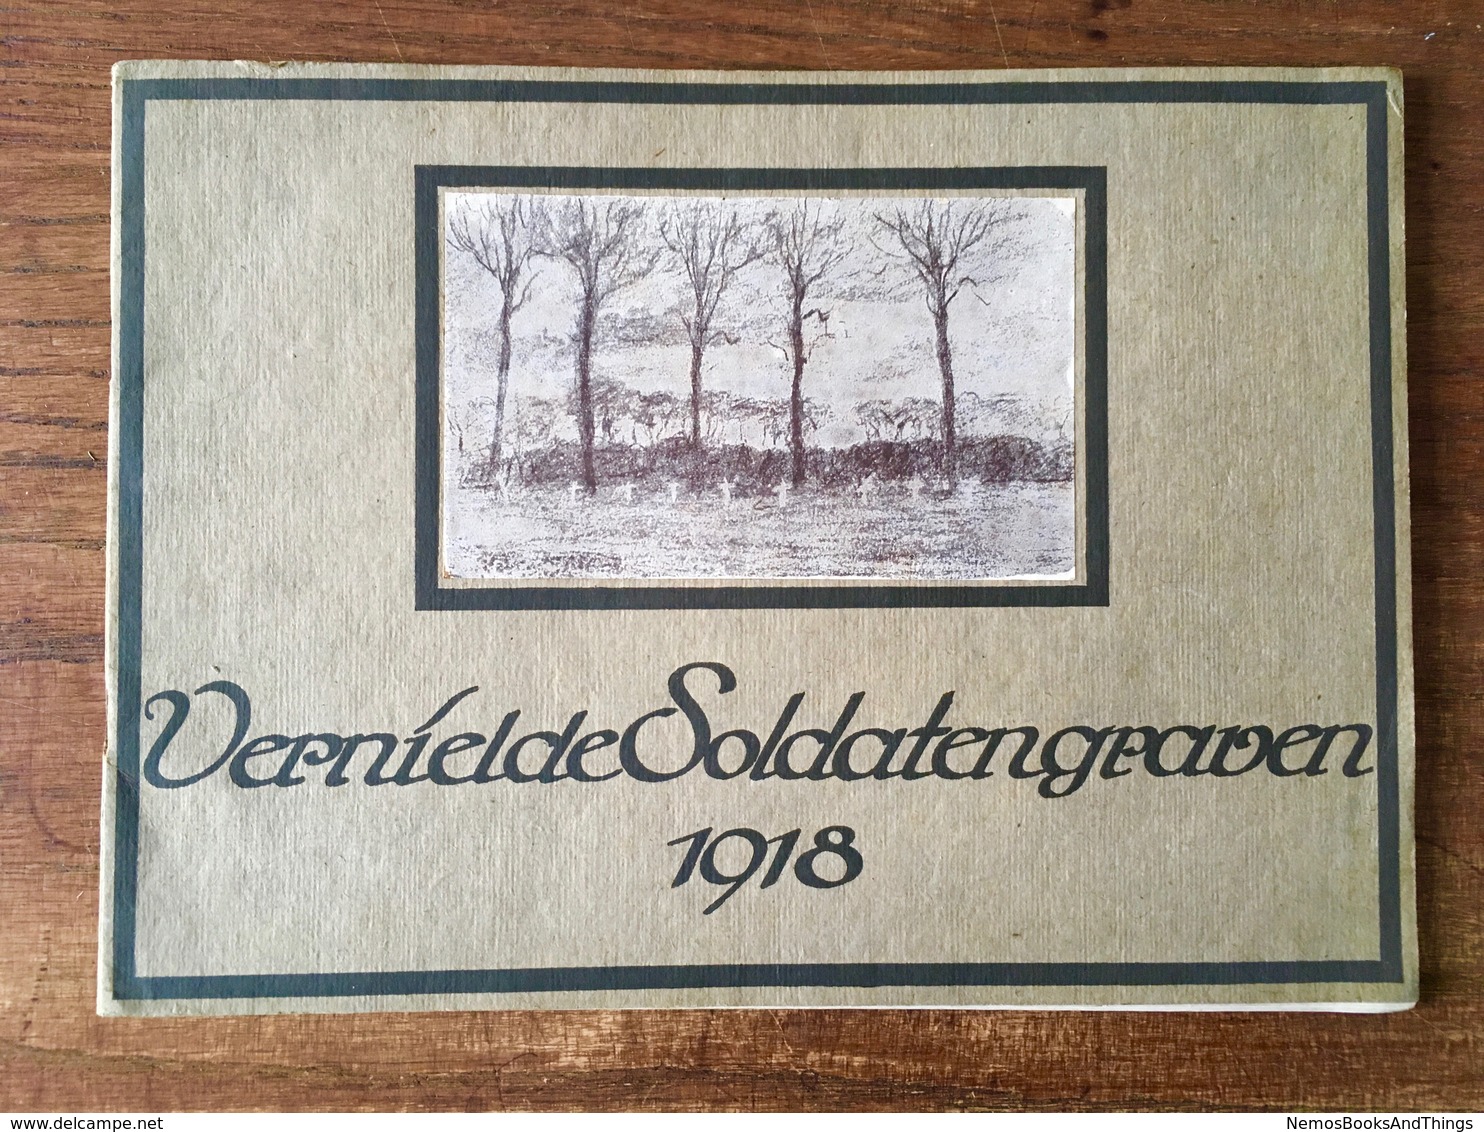 Vernielde Soldatengraven 1918 - War 1914-18